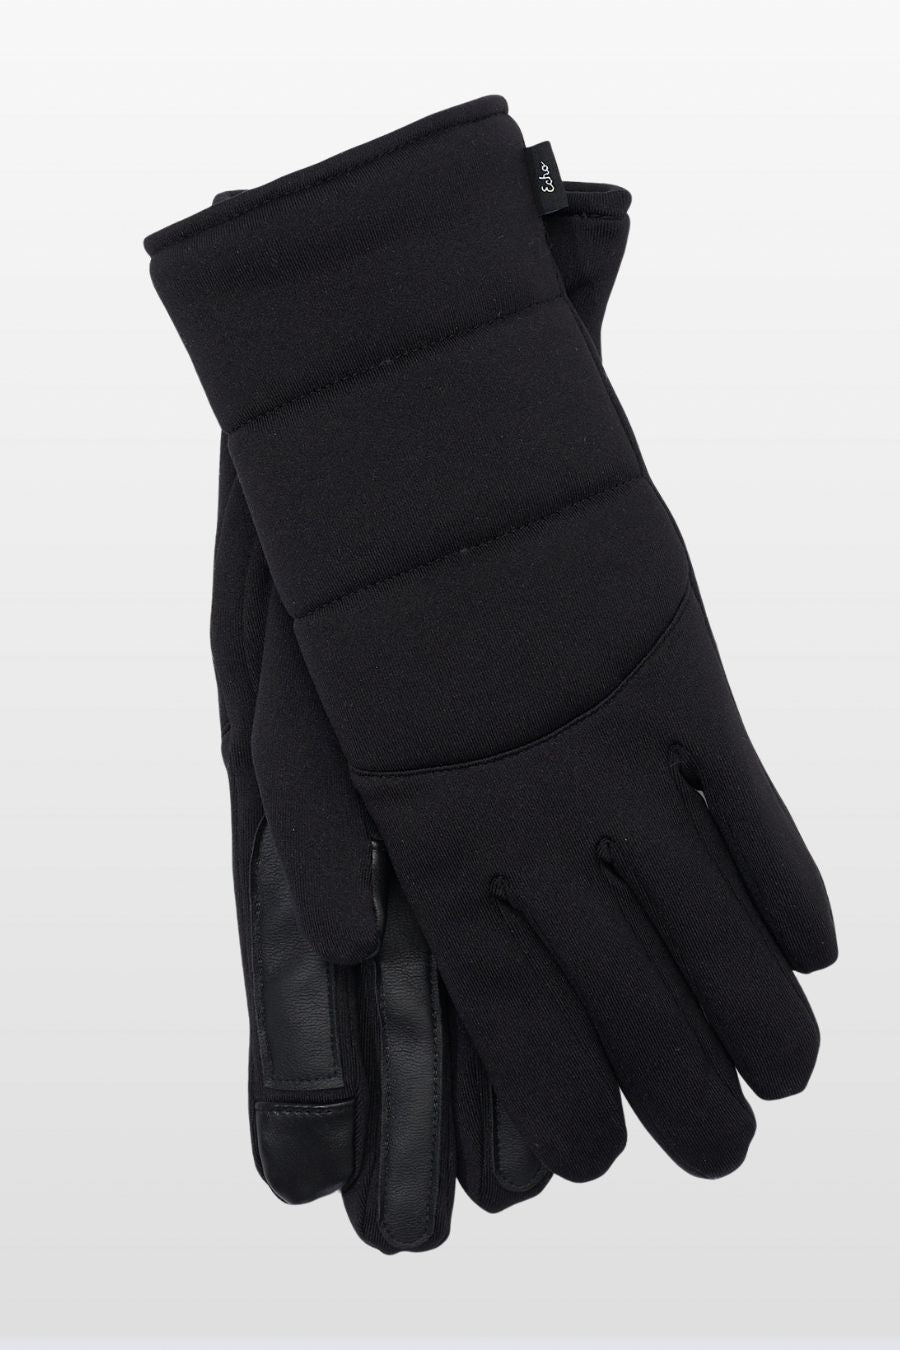 Warmest Glove